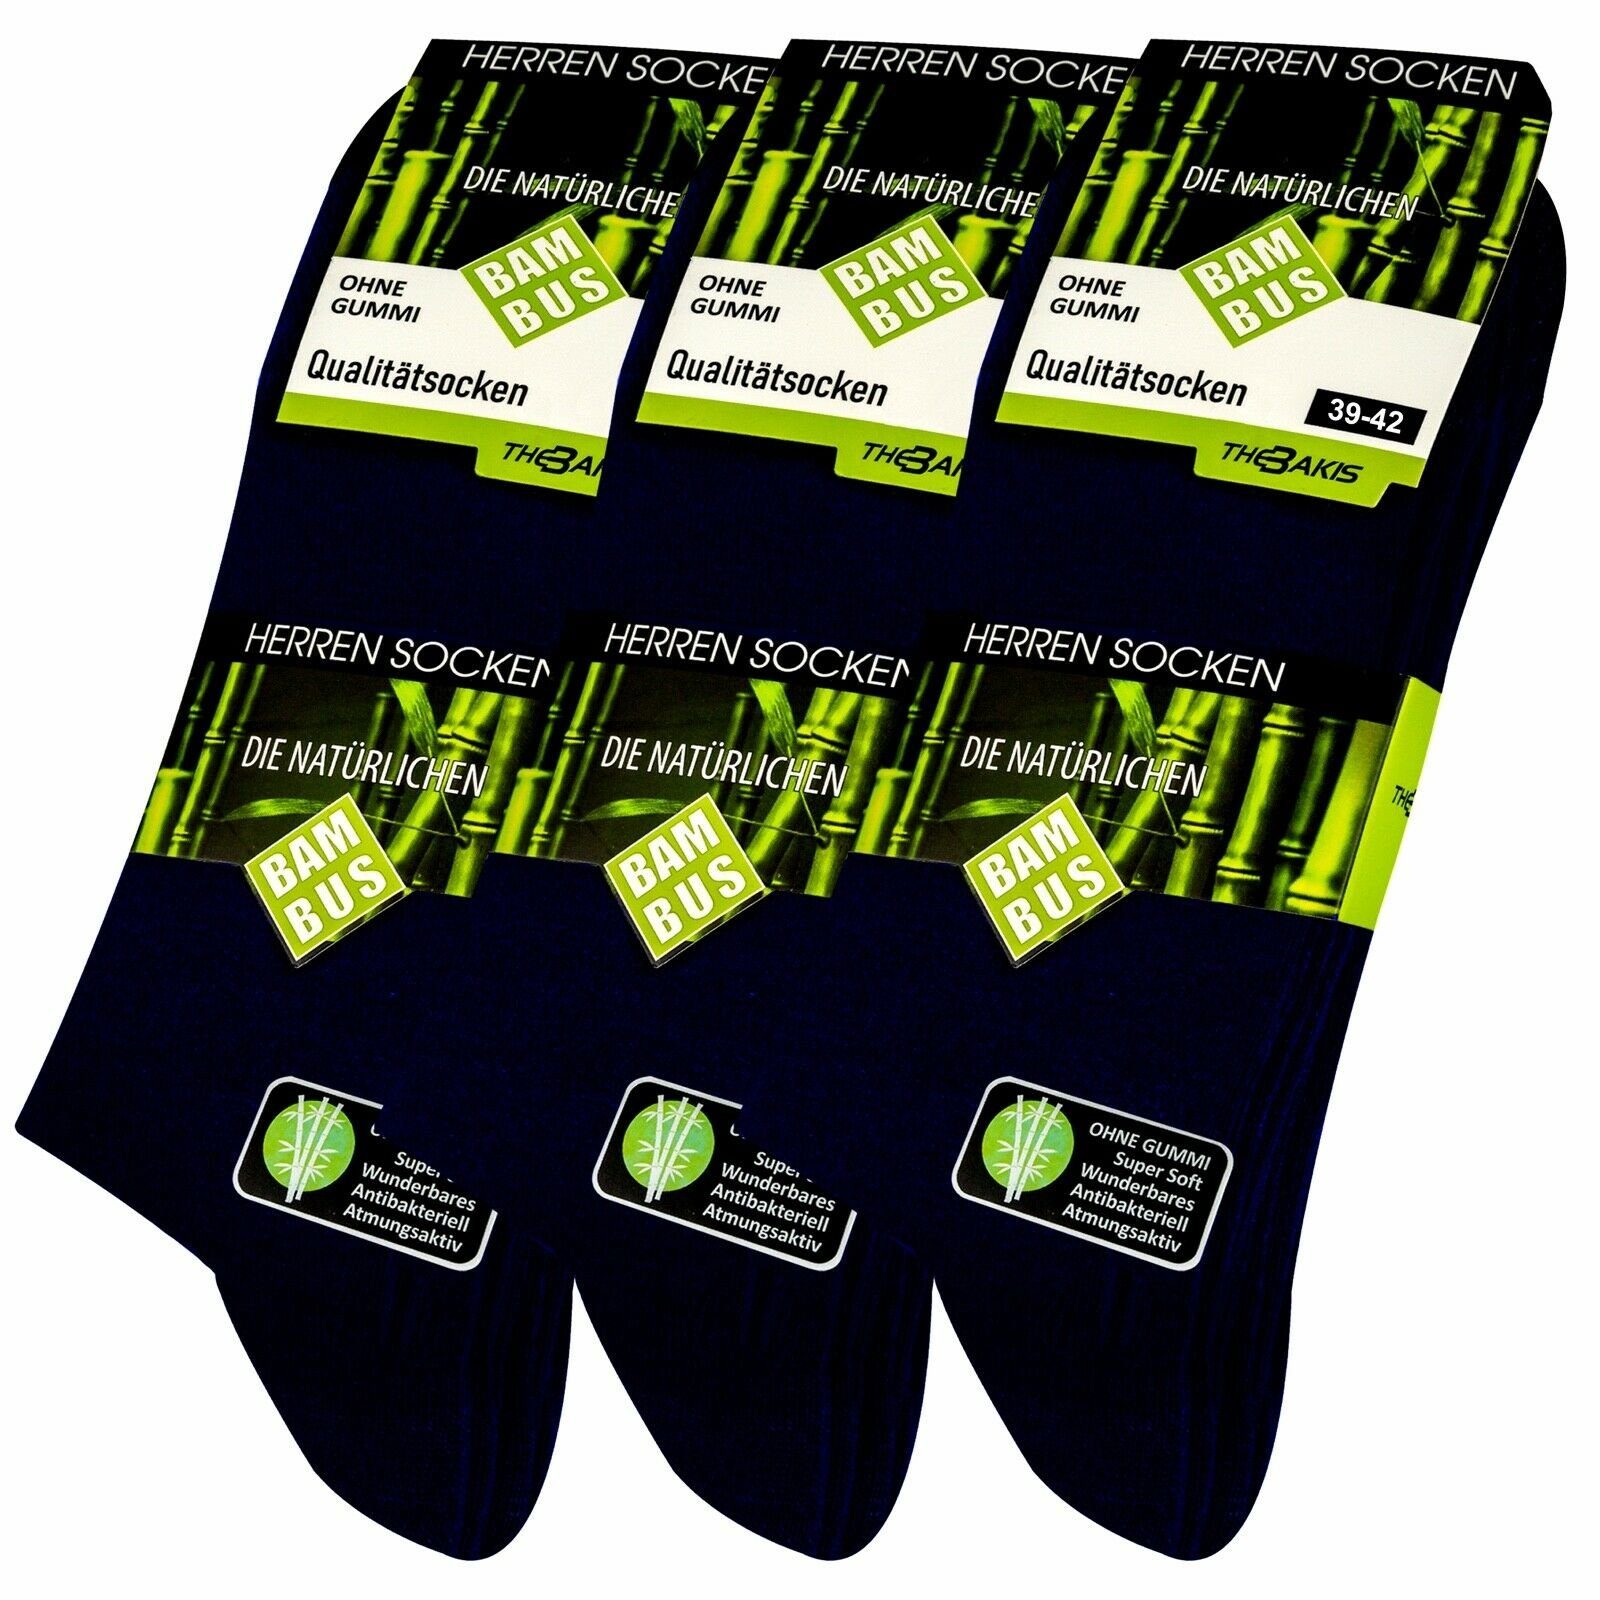 TEXEMP Gesundheitssocken 3 oder 6 Paar Diabetiker Socken ohne Gummi Damen Herren Socken ohne Naht Mehrfarbig Gesundheitssocken (Packung, 3-Paar, 3 oder 6 Paar) Blau